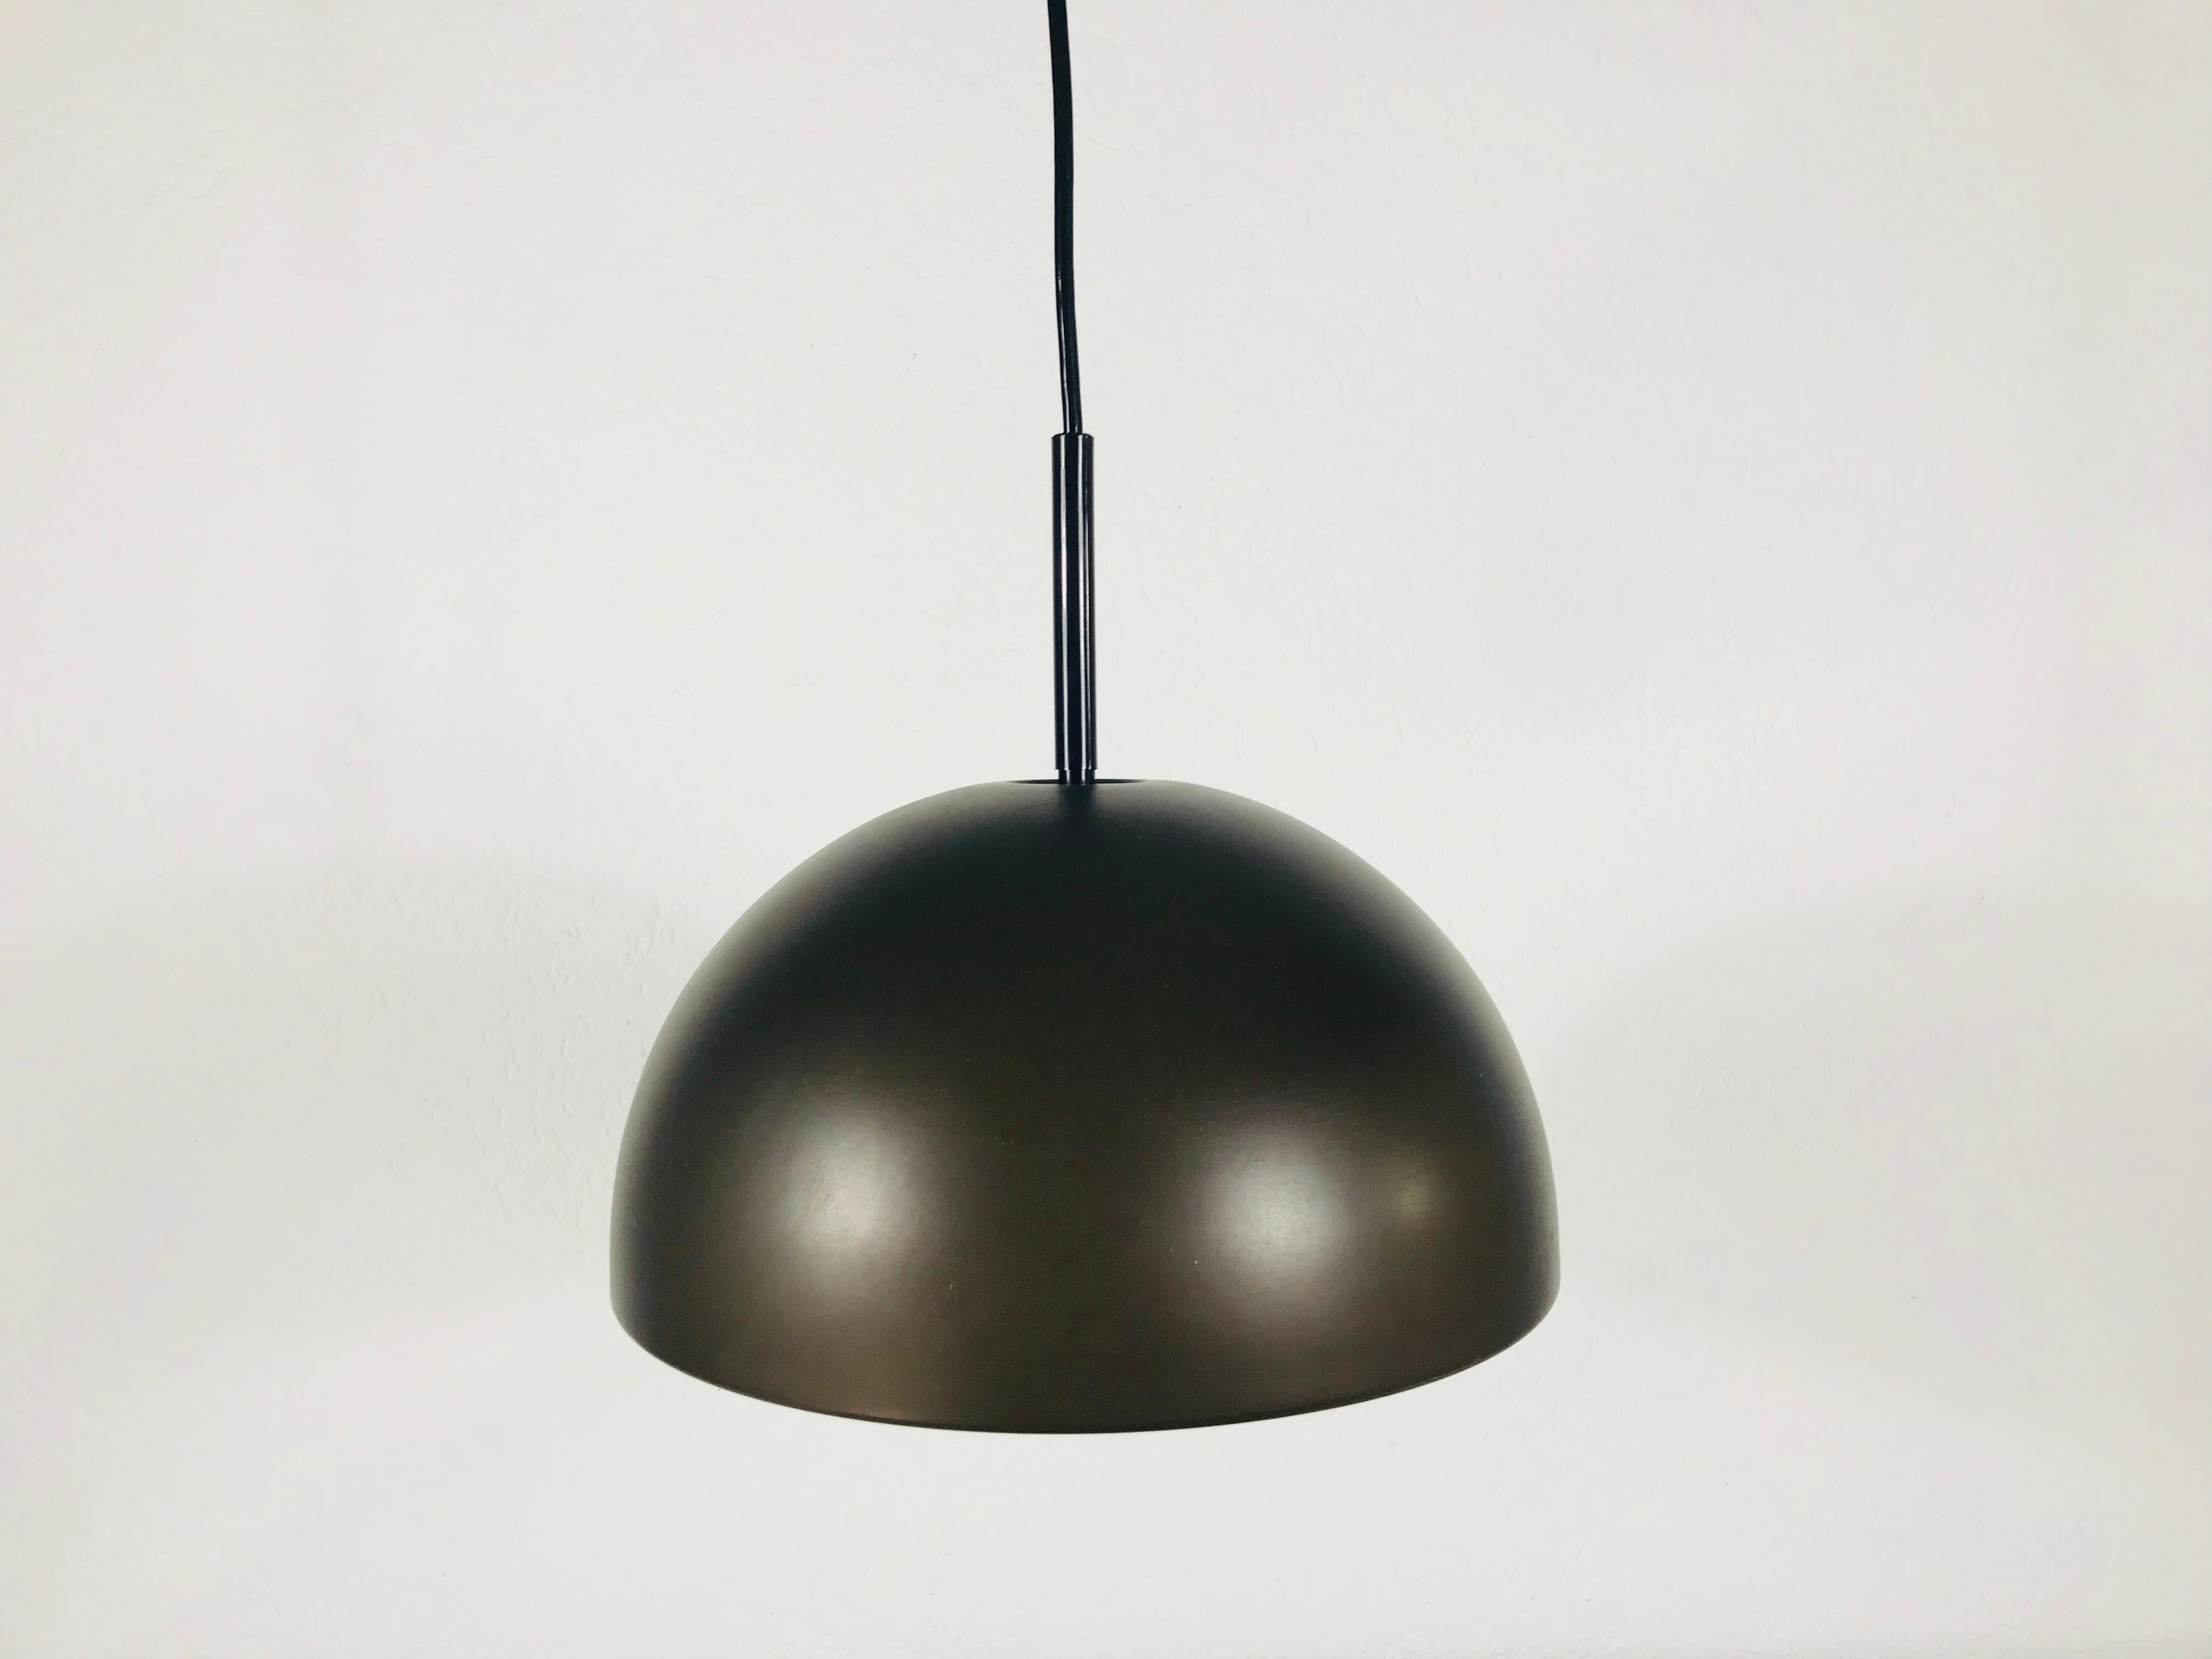 Lampe à suspension marron Staff fabriquée en Allemagne dans les années 1970. L'abat-jour brun est fabriqué en bakélite. Elle est dotée d'un disque rond en plastique blanc qui se fixe au bas de la lampe.

Le luminaire nécessite une ampoule E27.